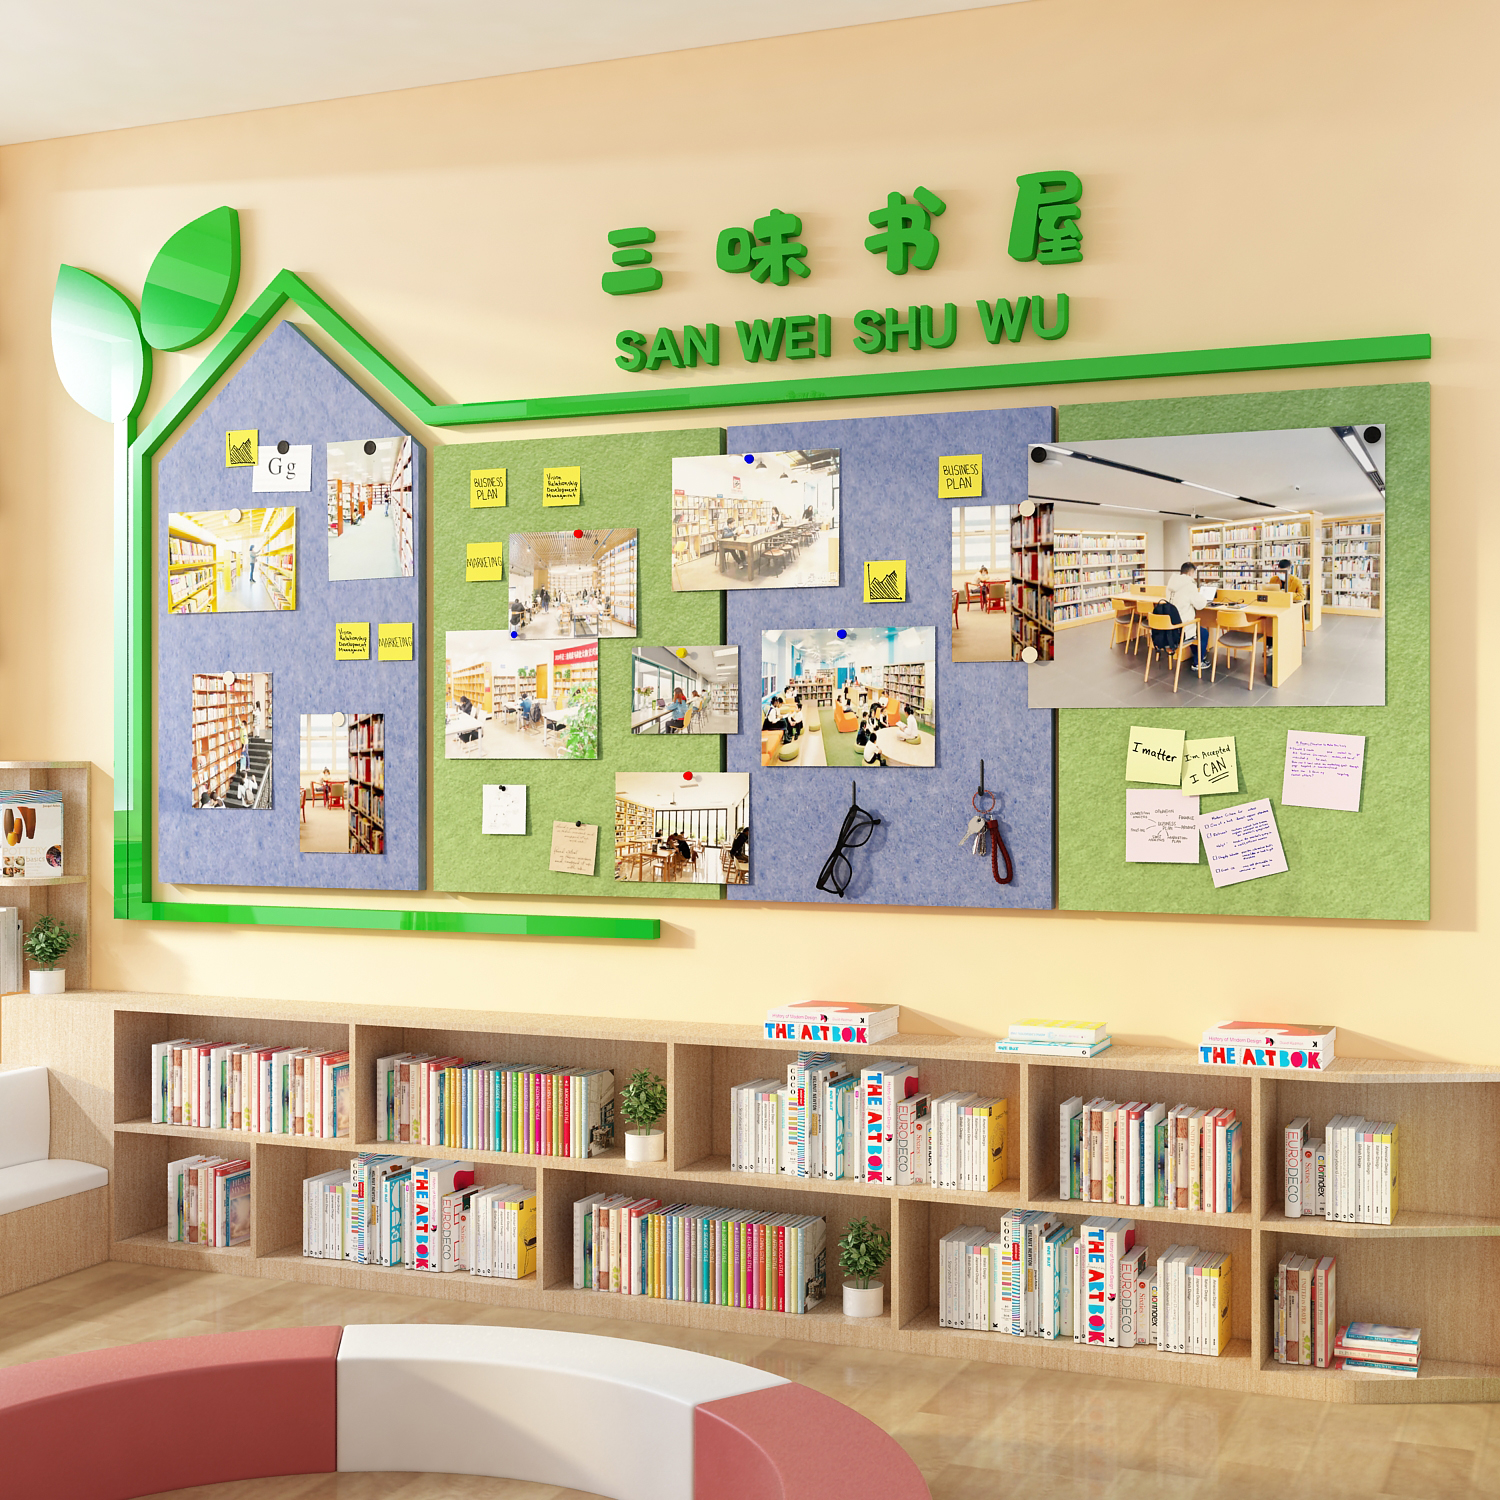 毛毡展示板阅览区布置装饰绘本馆环创读图书角教室文化墙面照片贴